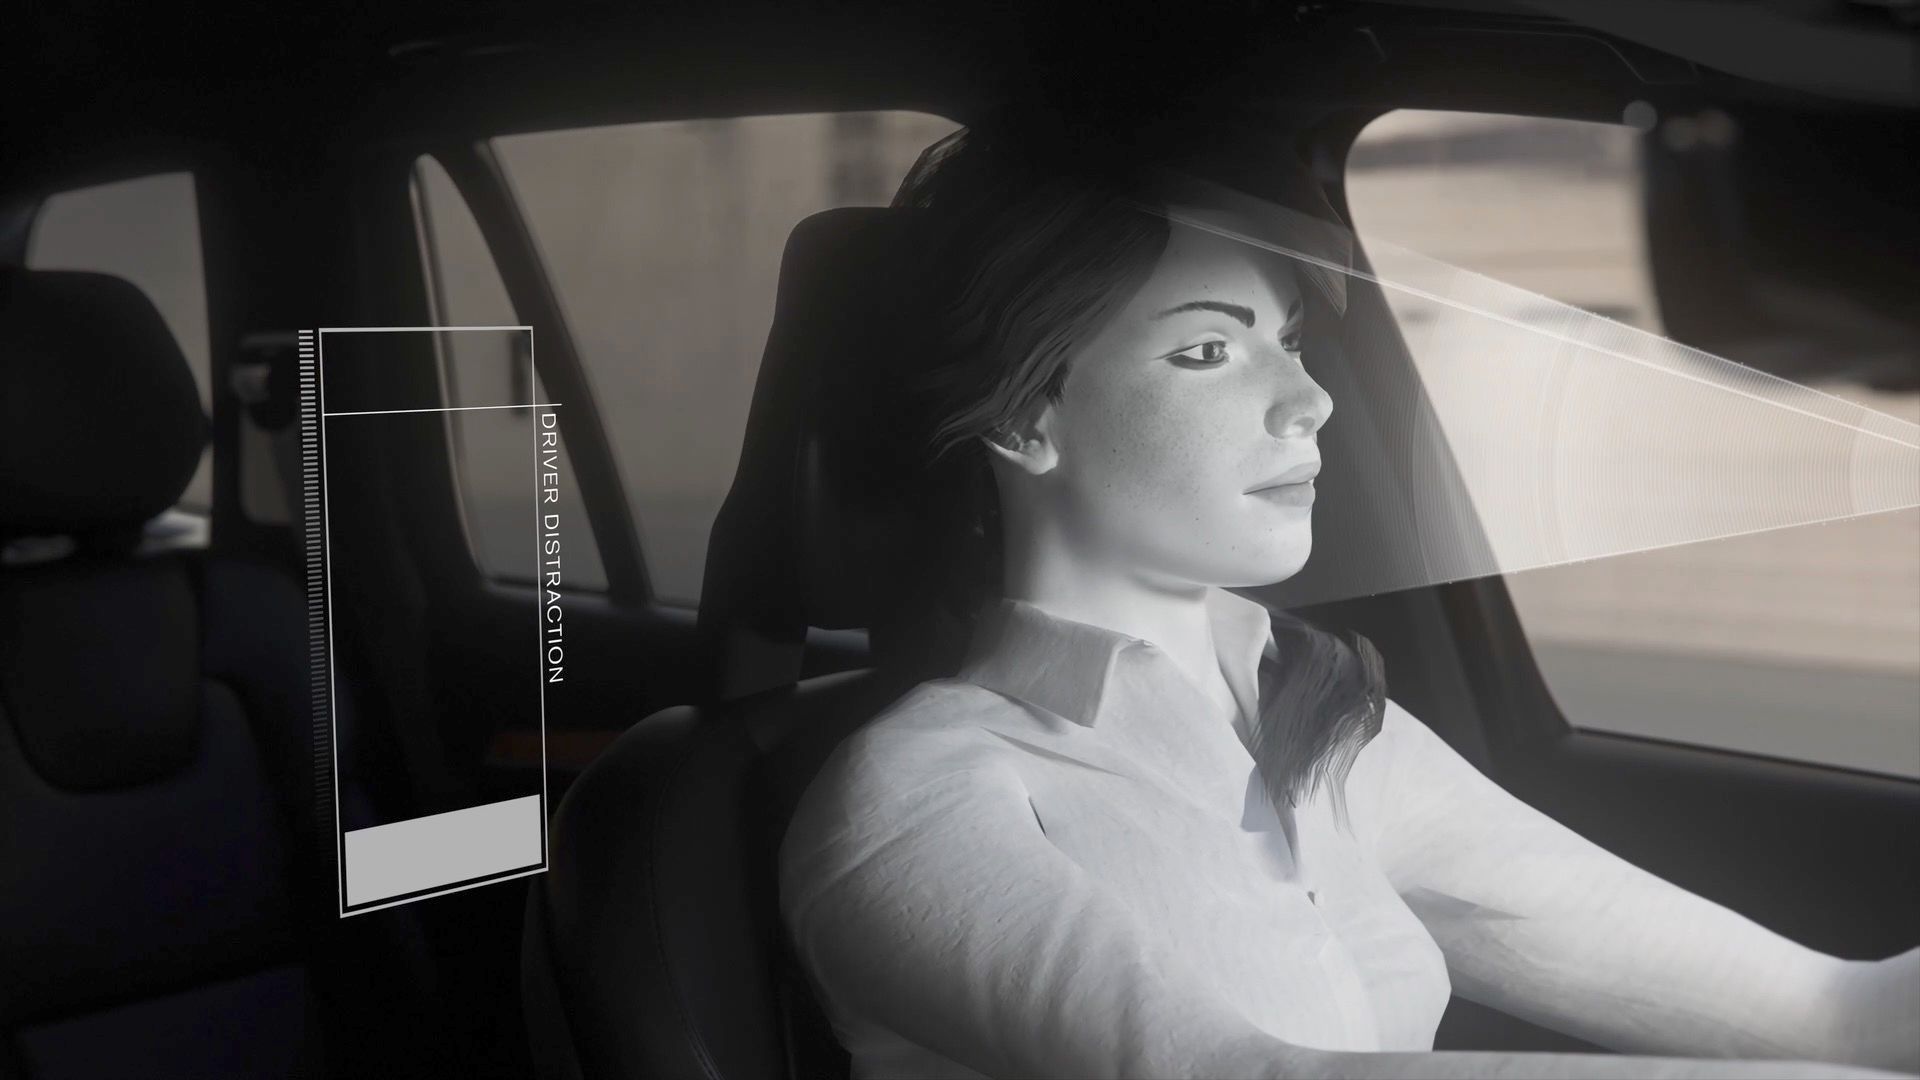 Mit Kameras und Sensoren - Volvo kämpft gegen Ablenkung und Rauschmitteleinfluss während der Fahrt